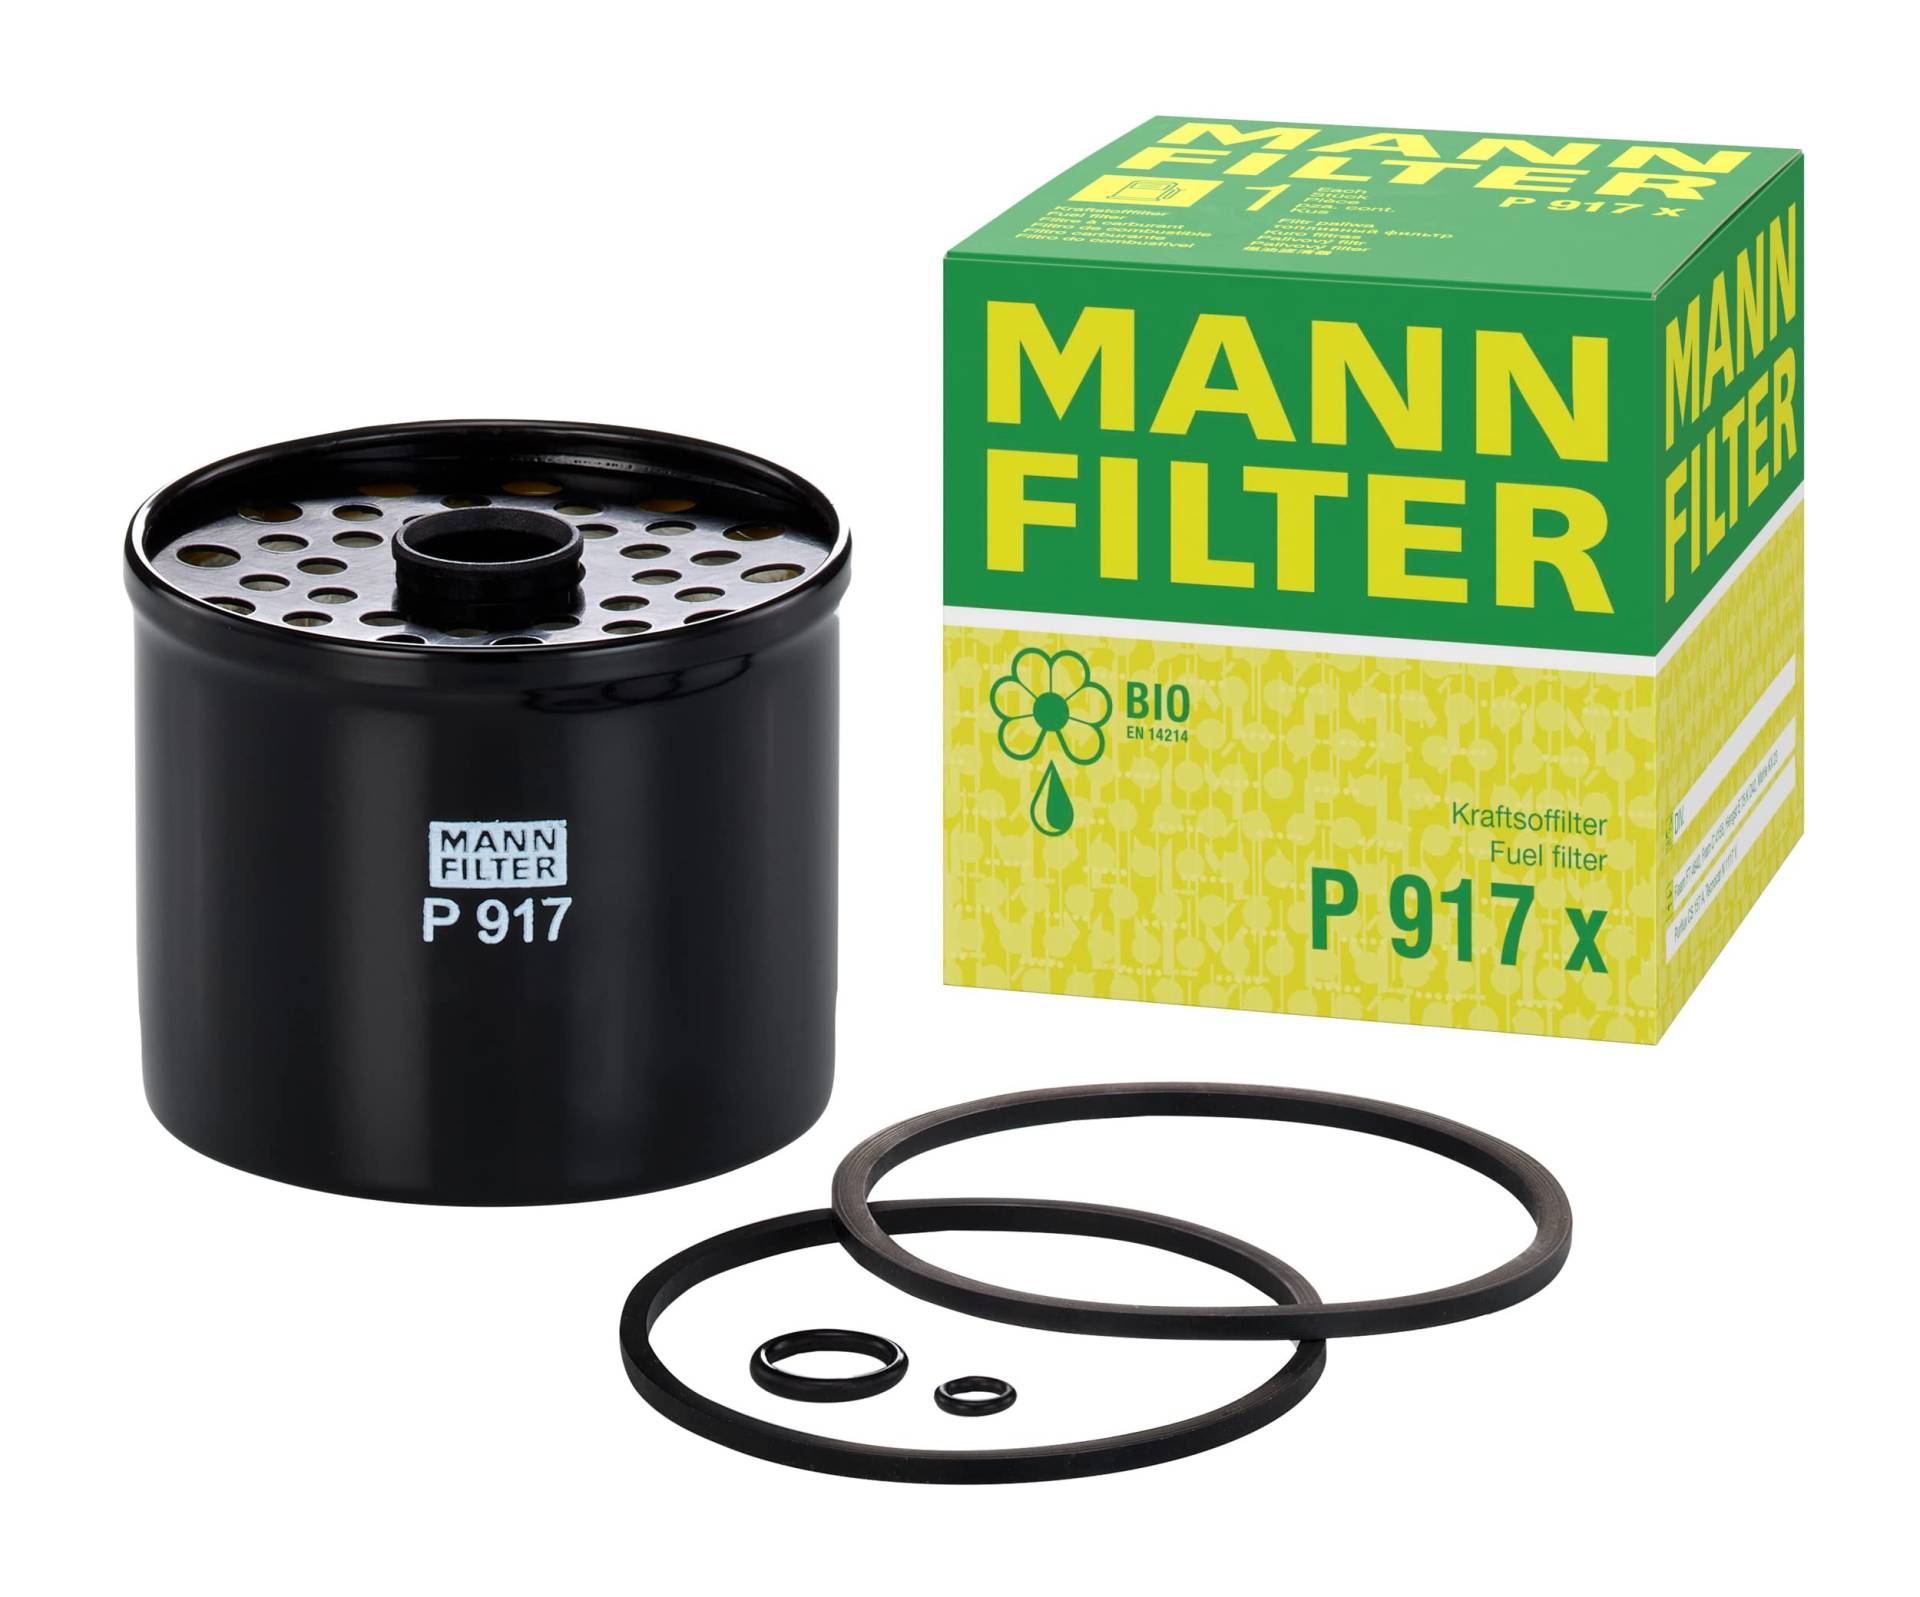 MANN-FILTER P 917/1 x - Kraftstofffilter Satz mit Dichtung / Dichtungssatz Kraftstofffilter – Für LKW, Busse und Nutzfahrzeuge von MANN-FILTER